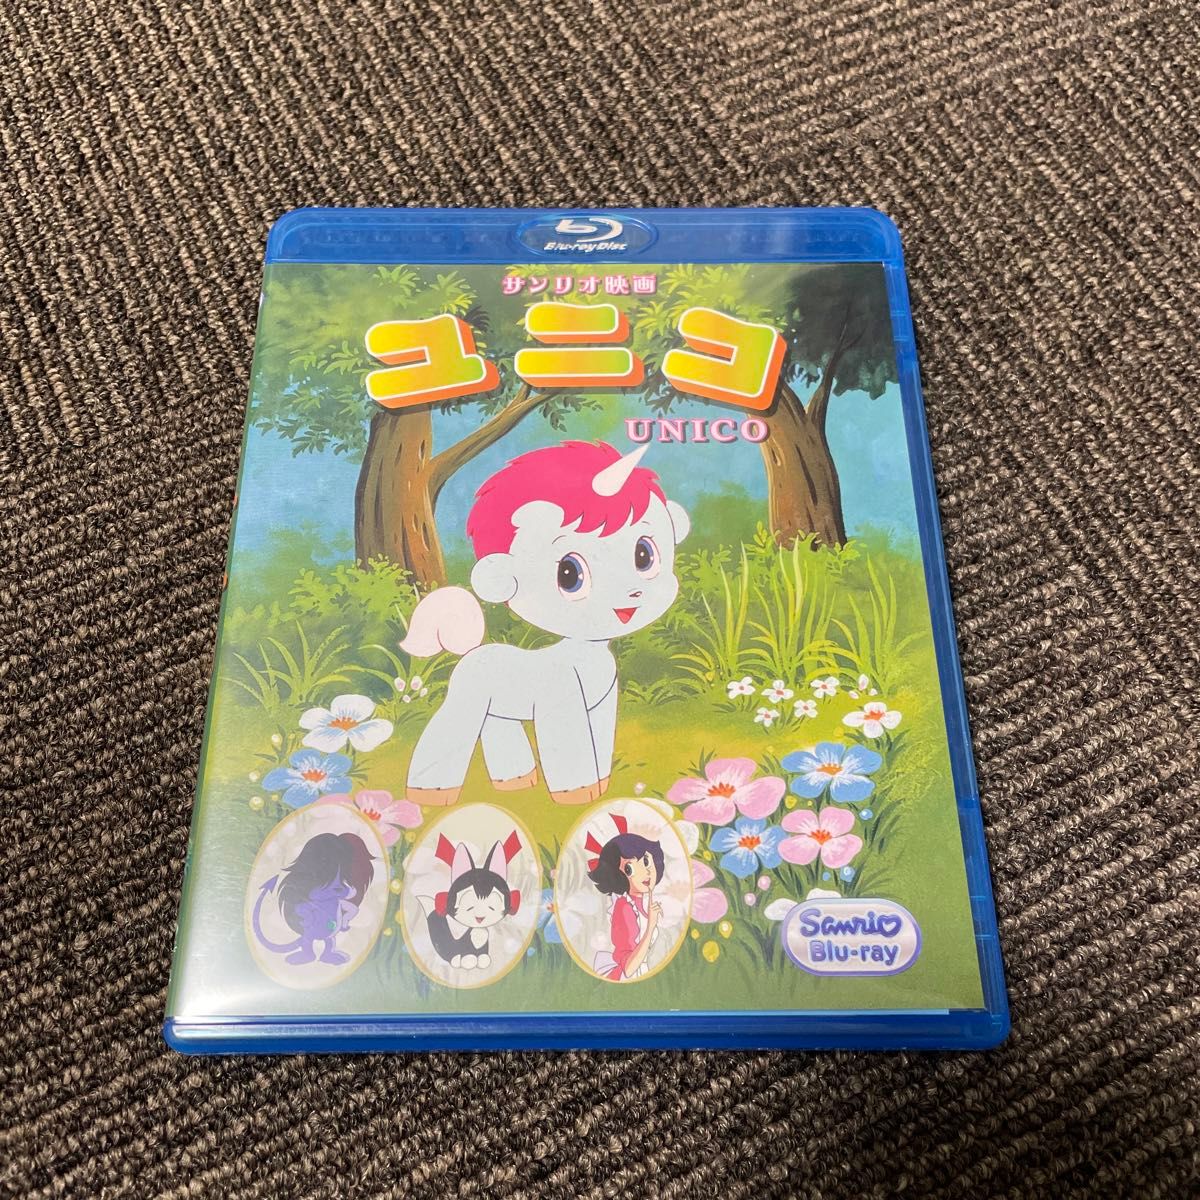 ユニコ DVD Blu-ray サンリオ映画シリーズ 手塚治虫